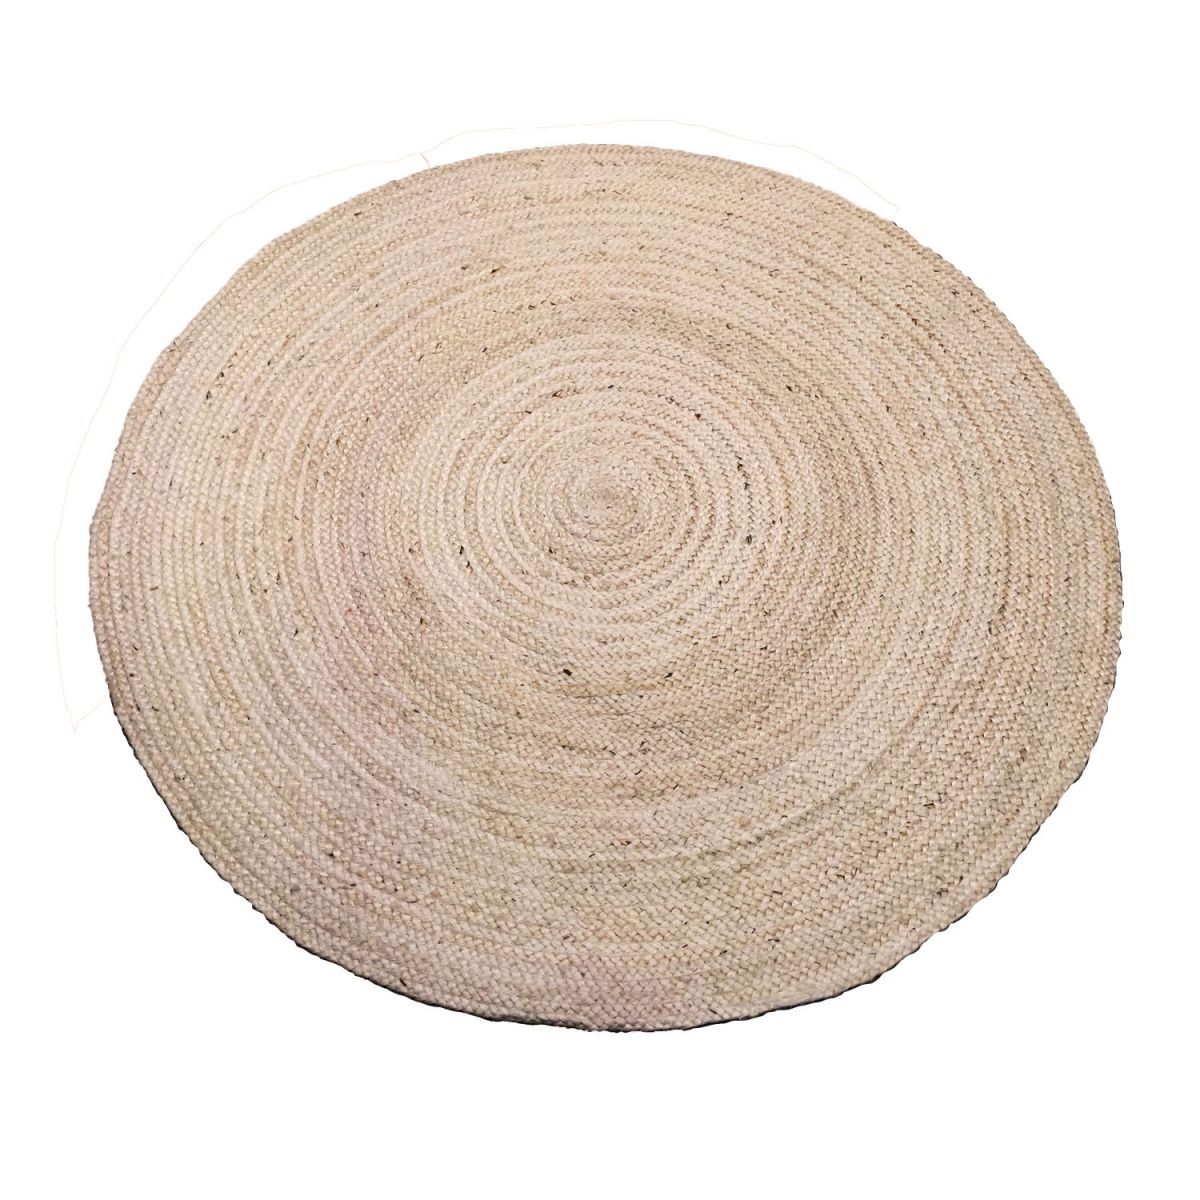 rug braided jute offwhite 250cm